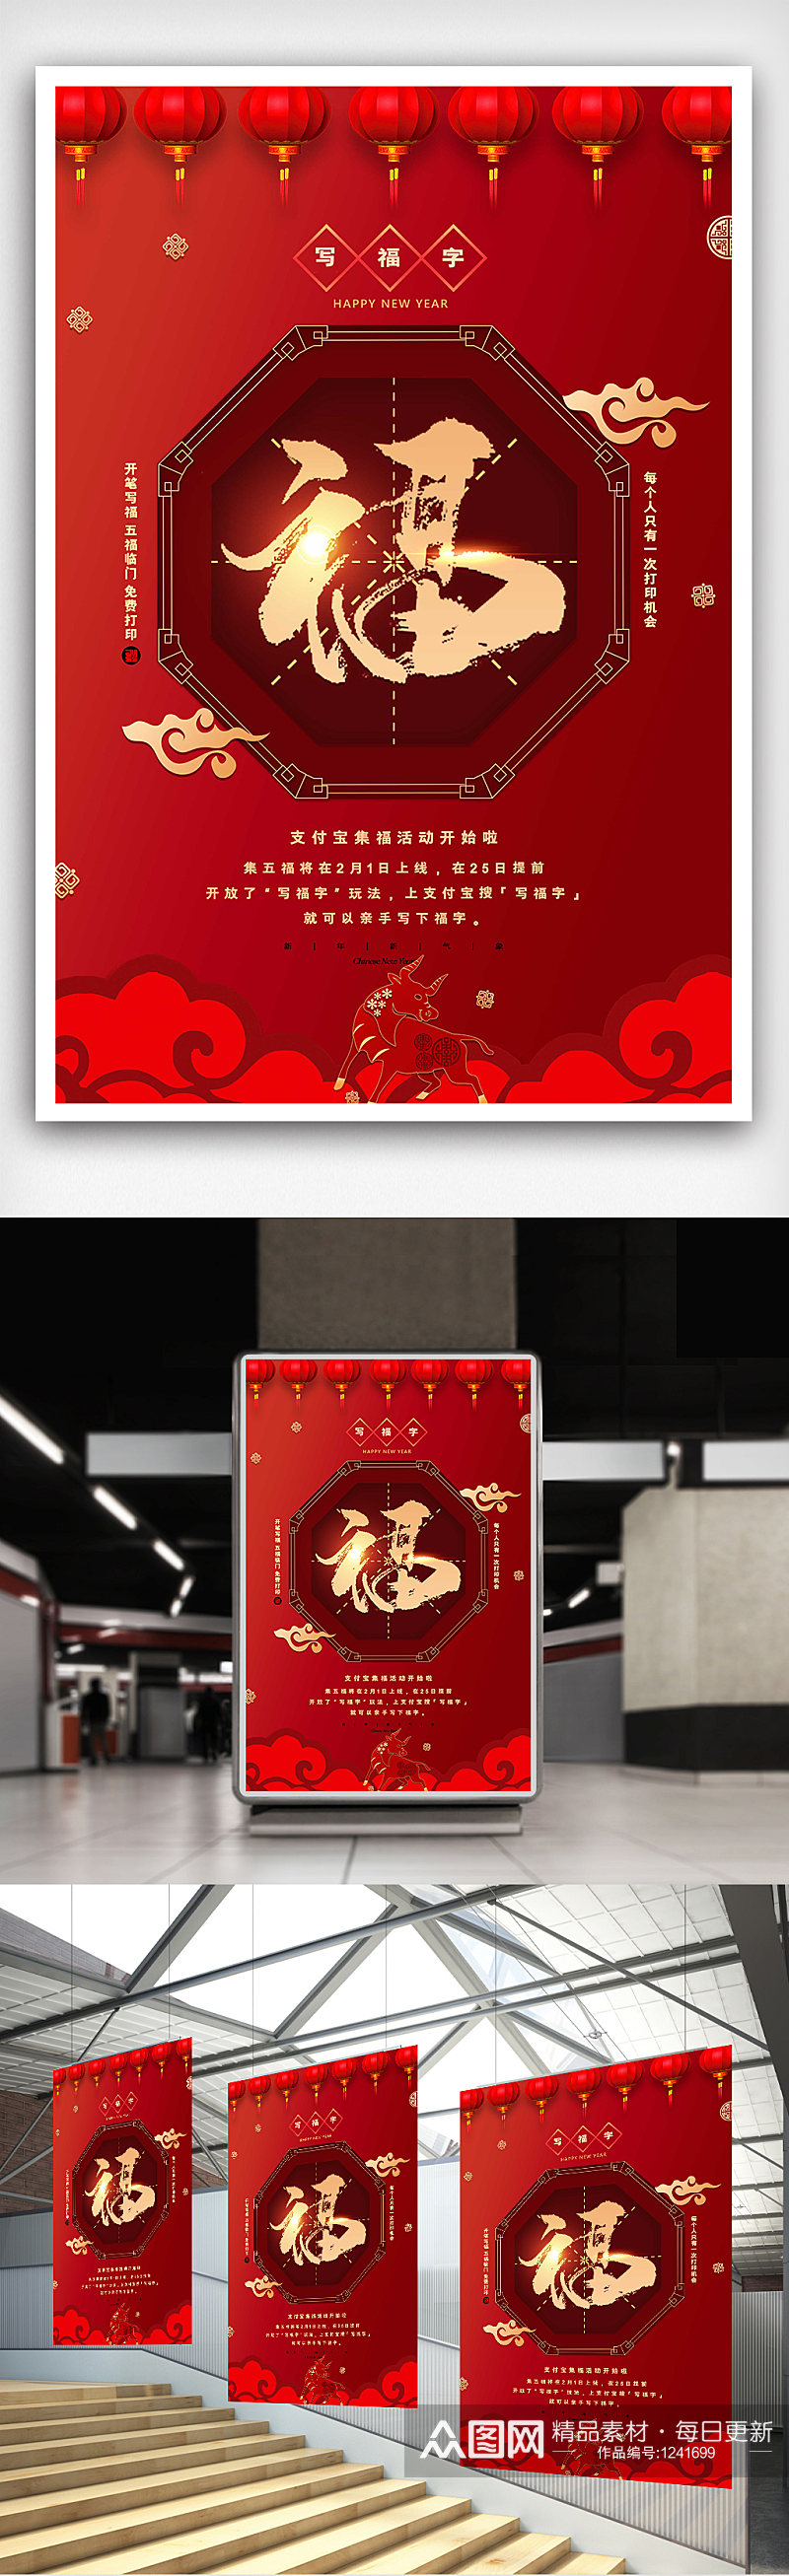 红色中式支付宝福字活动海报素材